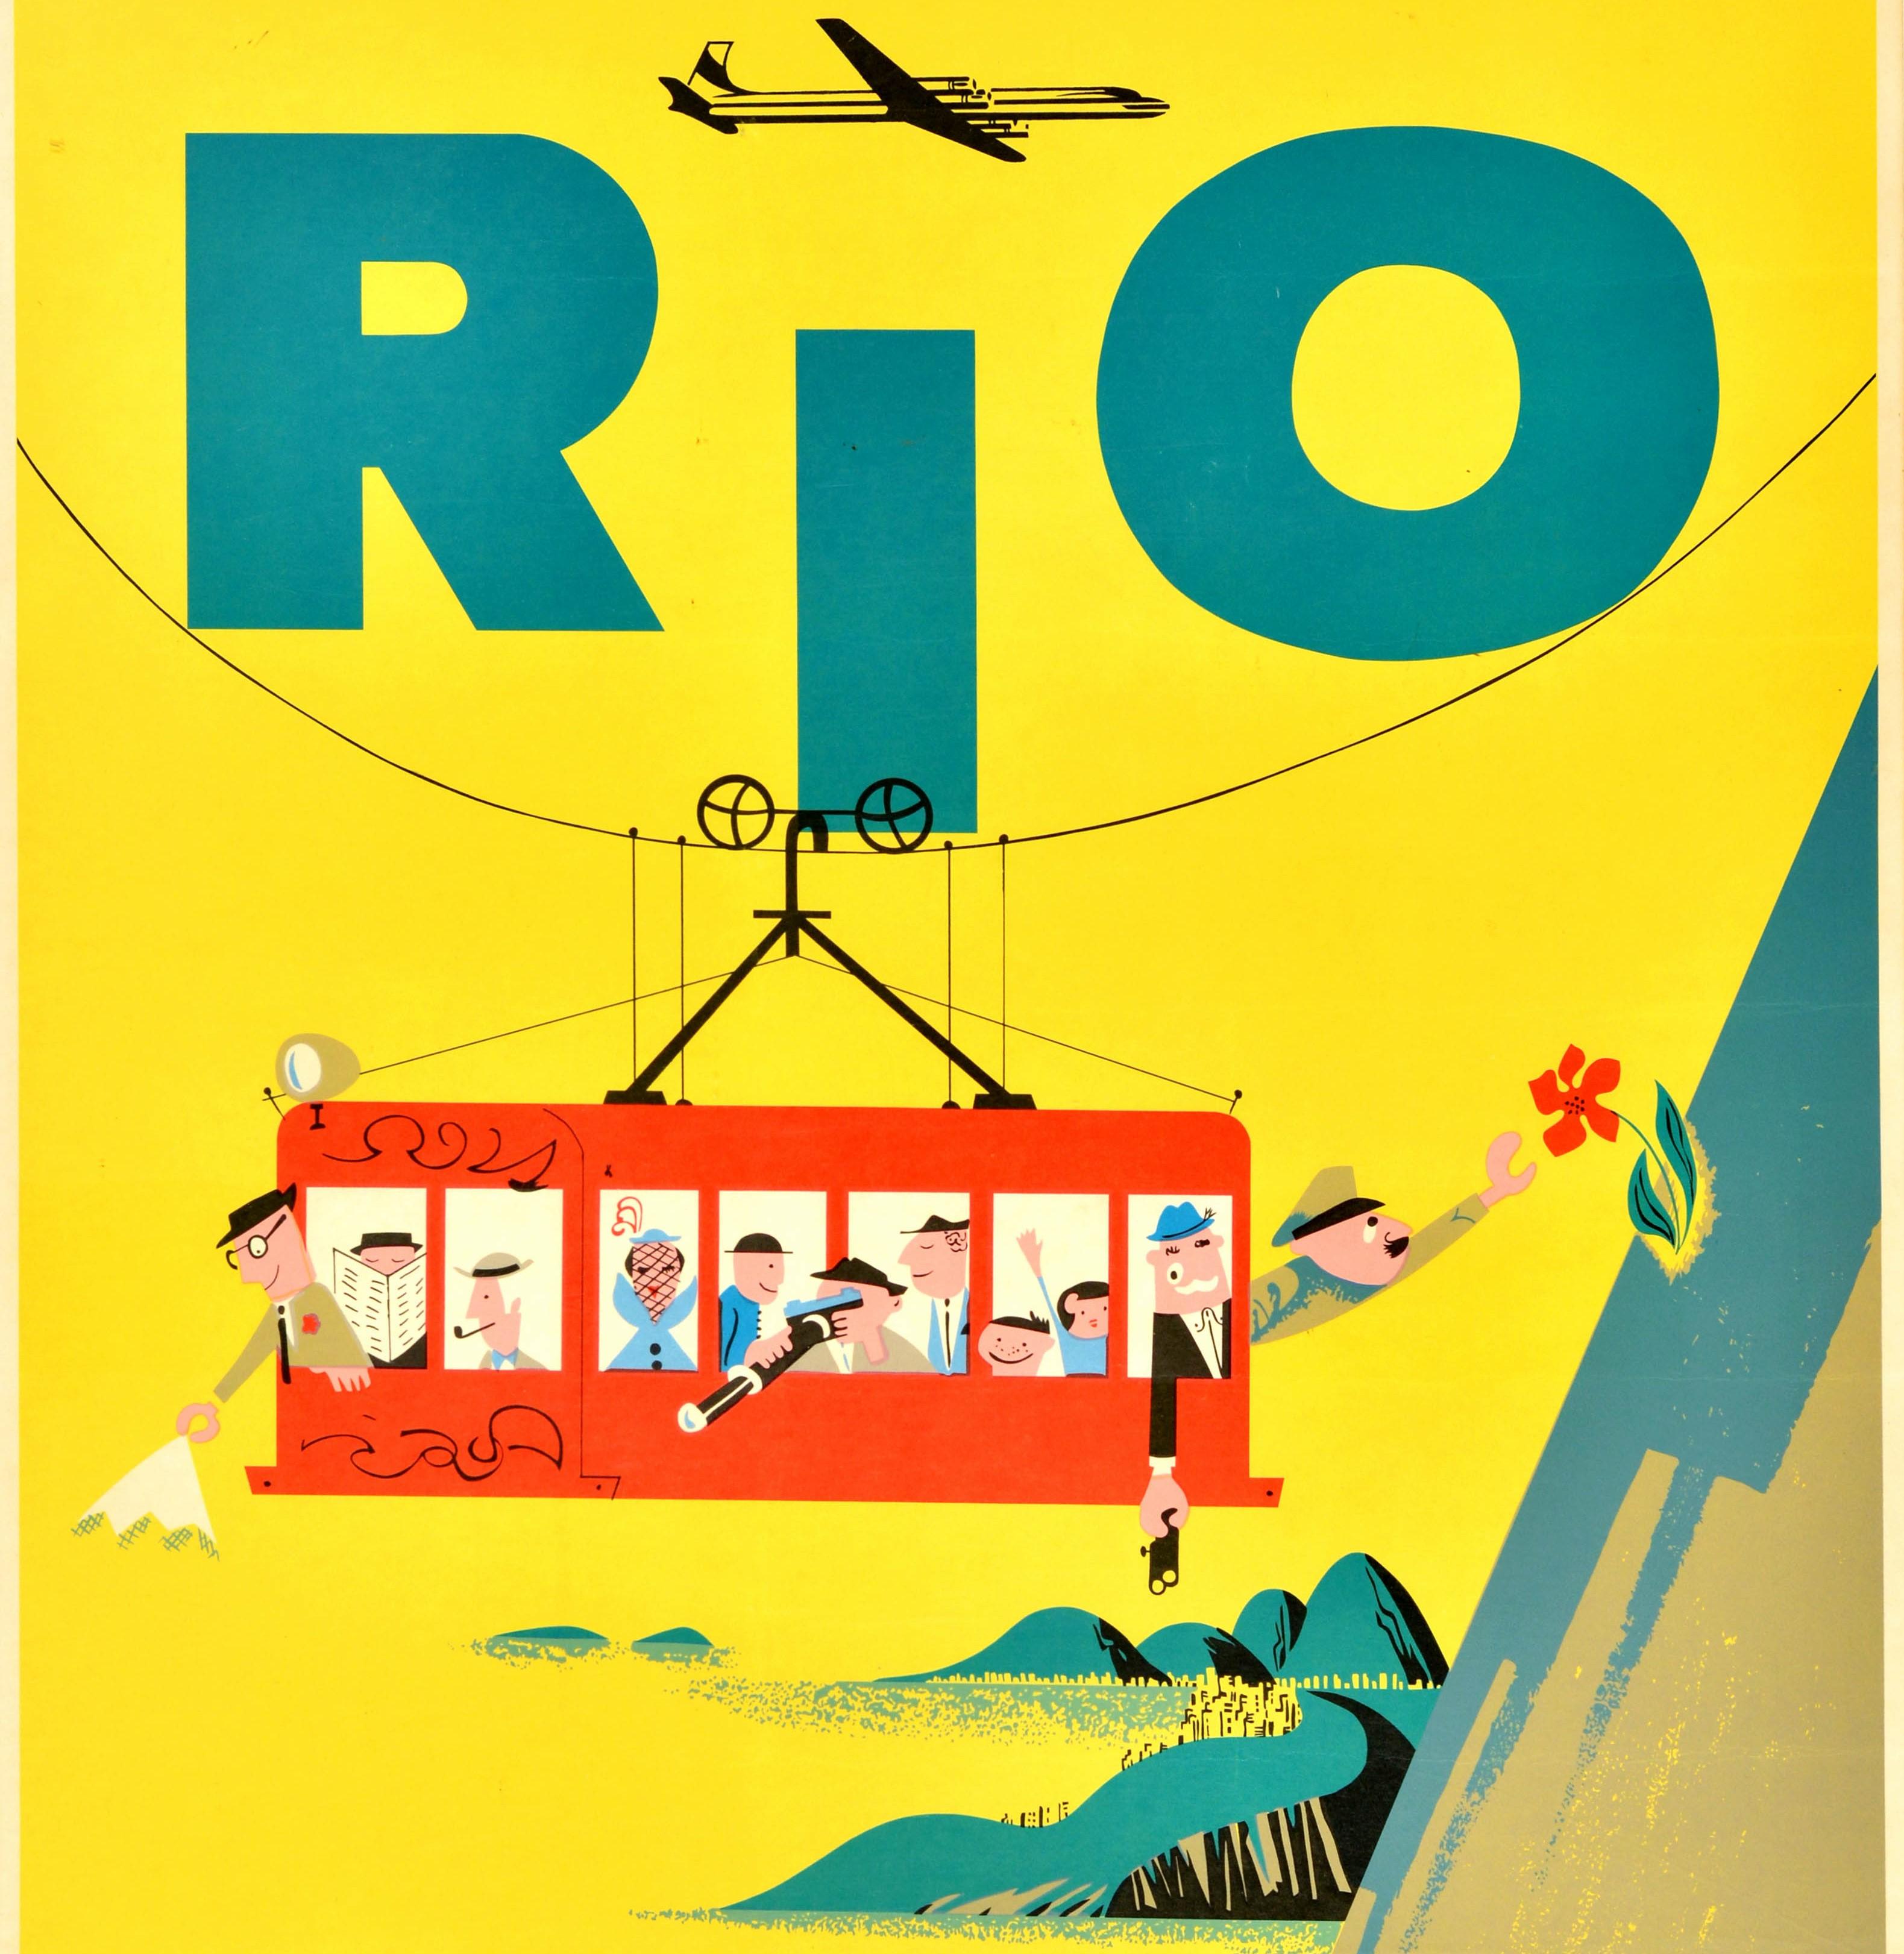 Affiche de voyage originale d'époque pour Rio de Janeiro, émise par Braniff International Airways, présentant une illustration colorée de touristes sur un téléphérique rouge avec des personnes profitant de la vue, un homme fumant une pipe et un